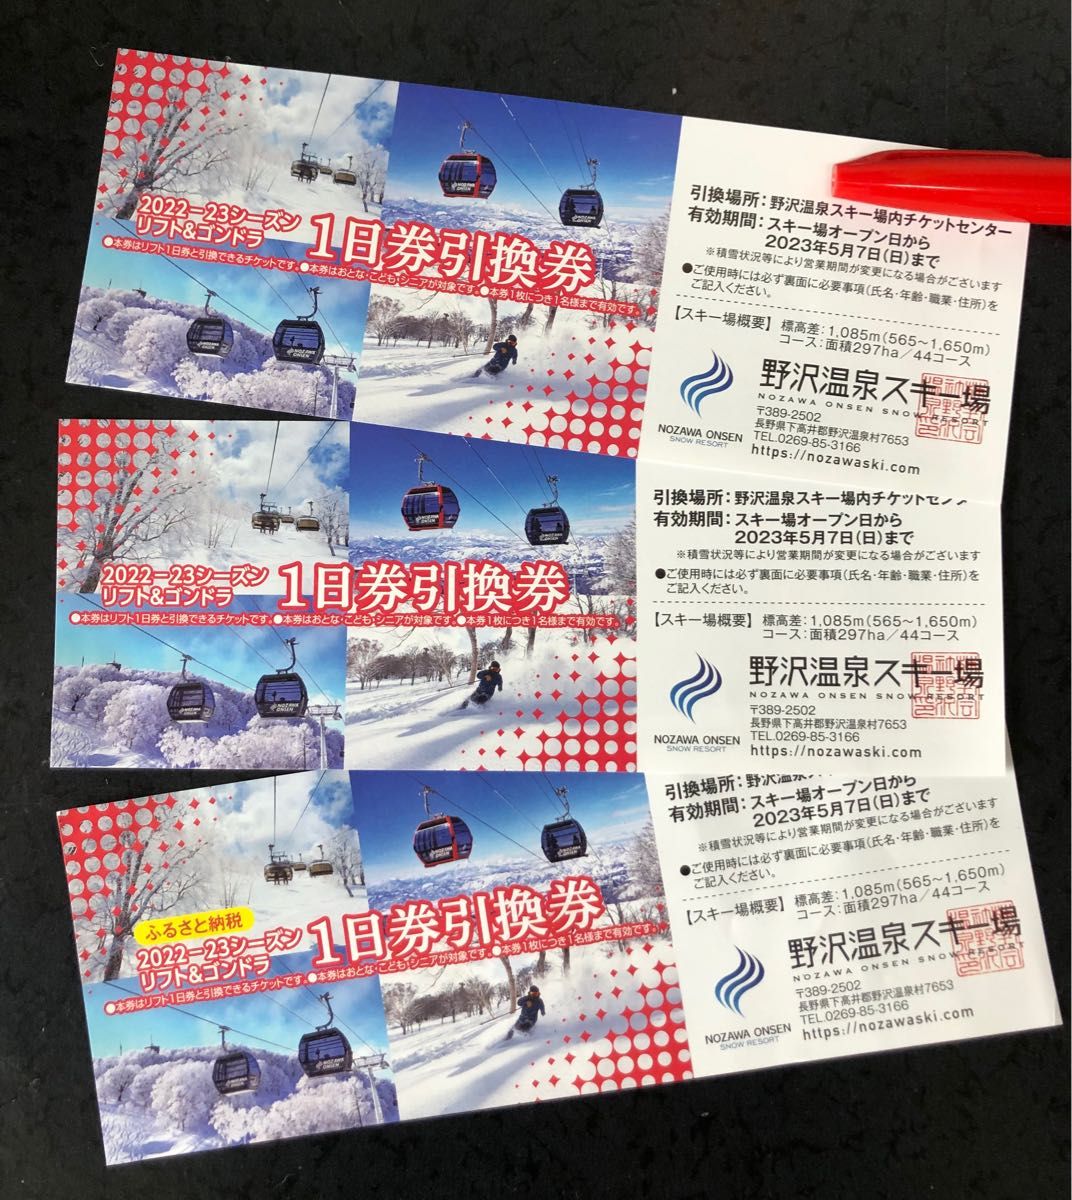 野沢温泉スキー場 2022-2023シリーズ リフト&ゴンドラ1日券引換券 5枚